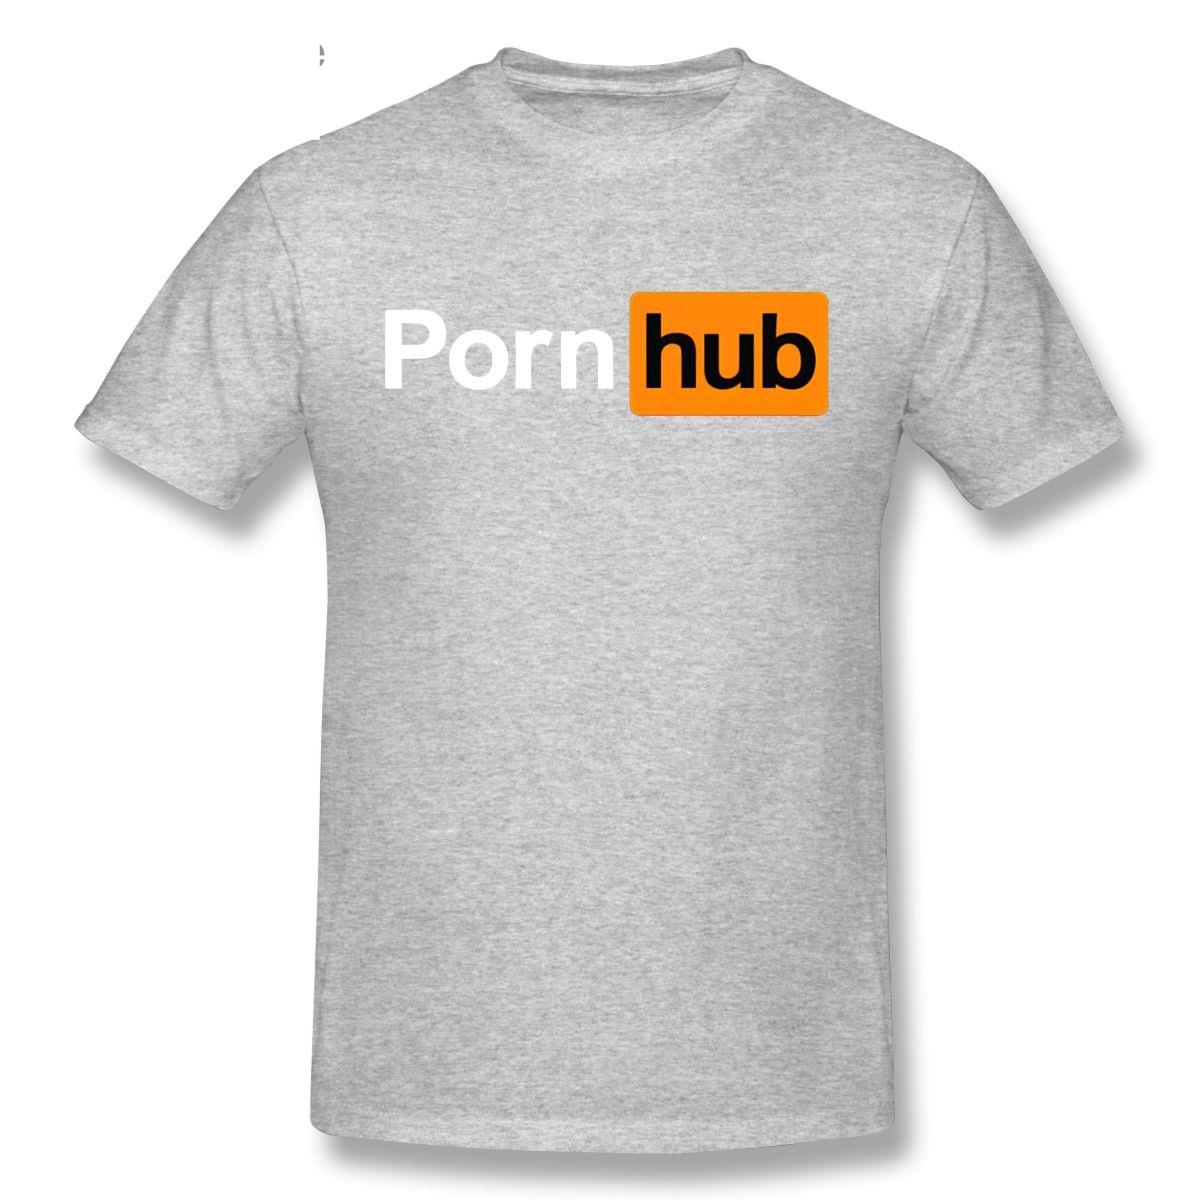 T-shirt pornhub gray